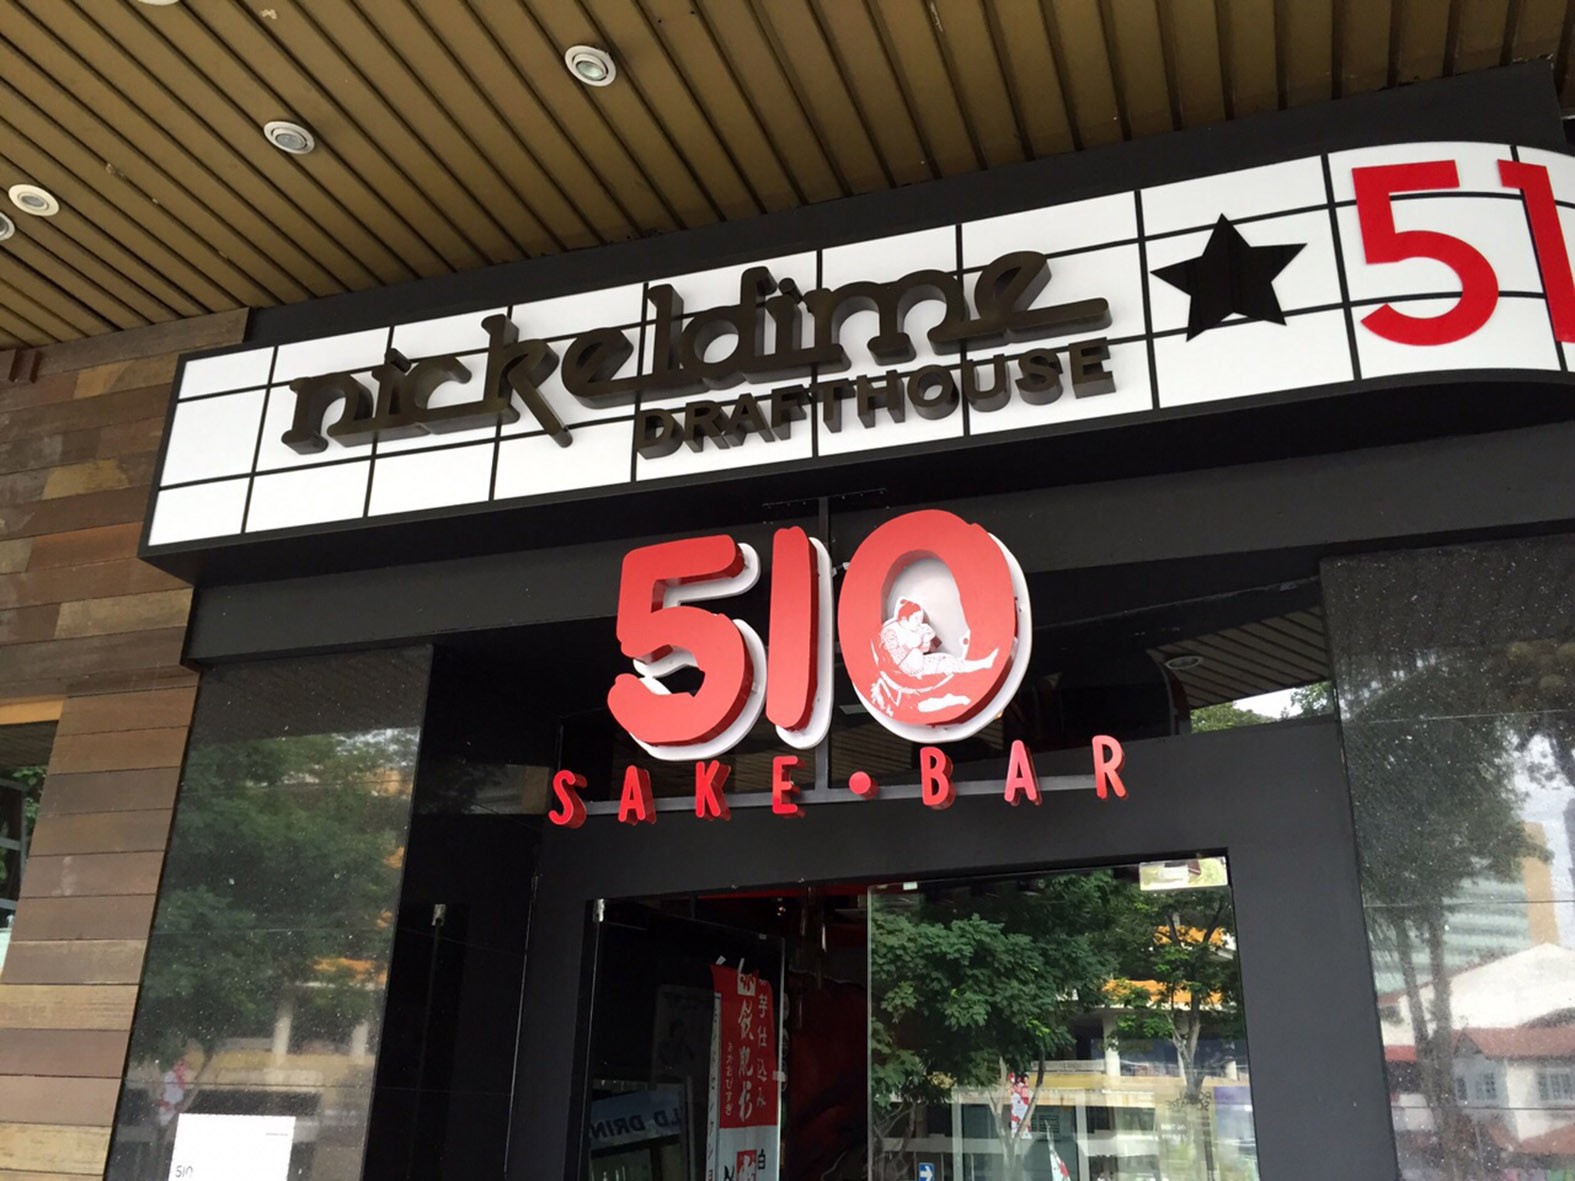 510 Sakae Bar